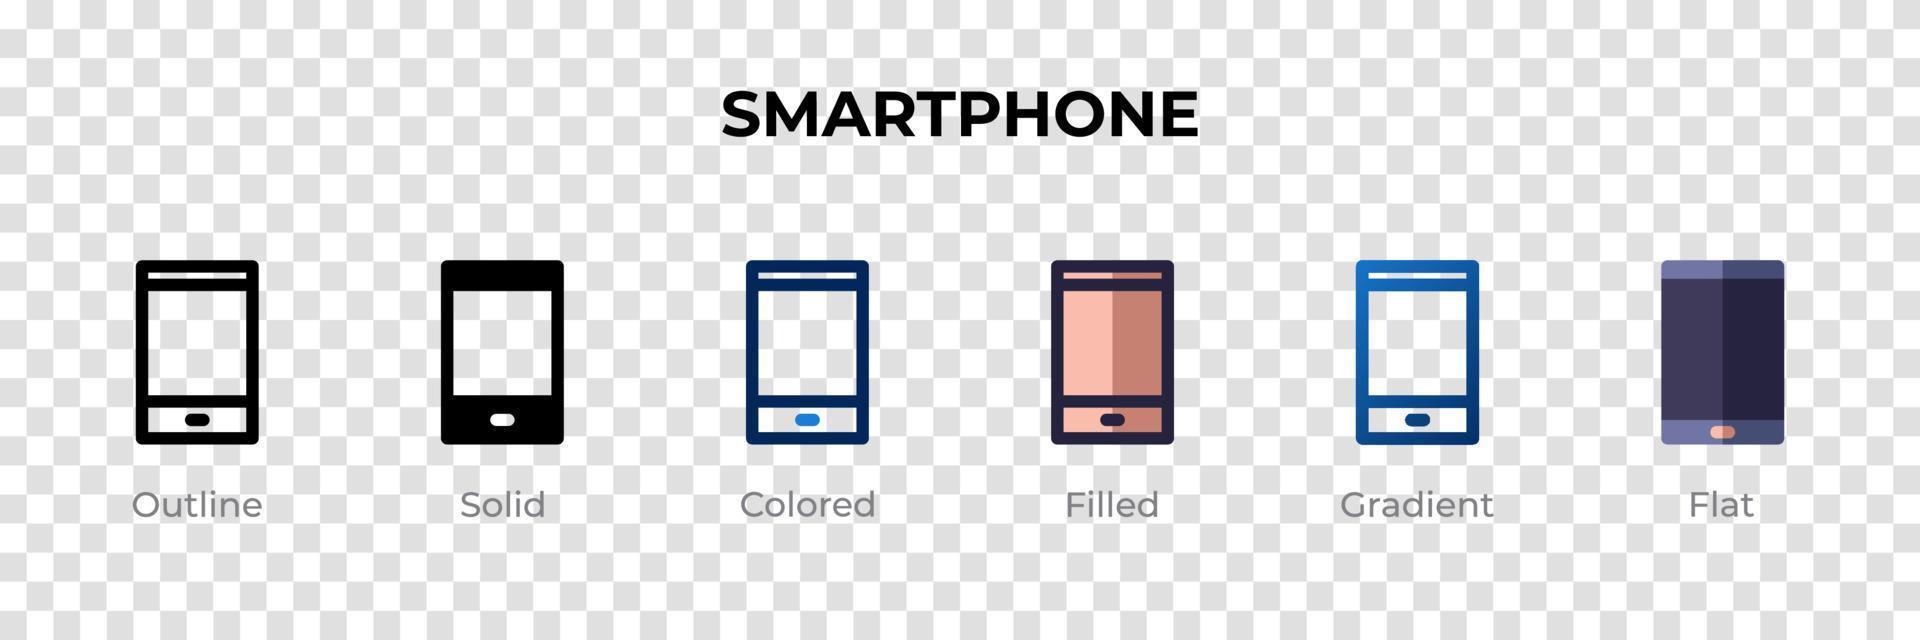 icono de teléfono inteligente en un estilo diferente. iconos vectoriales de smartphone diseñados en contorno, sólido, coloreado, relleno, degradado y estilo plano. símbolo, ilustración de logotipo. ilustración vectorial vector